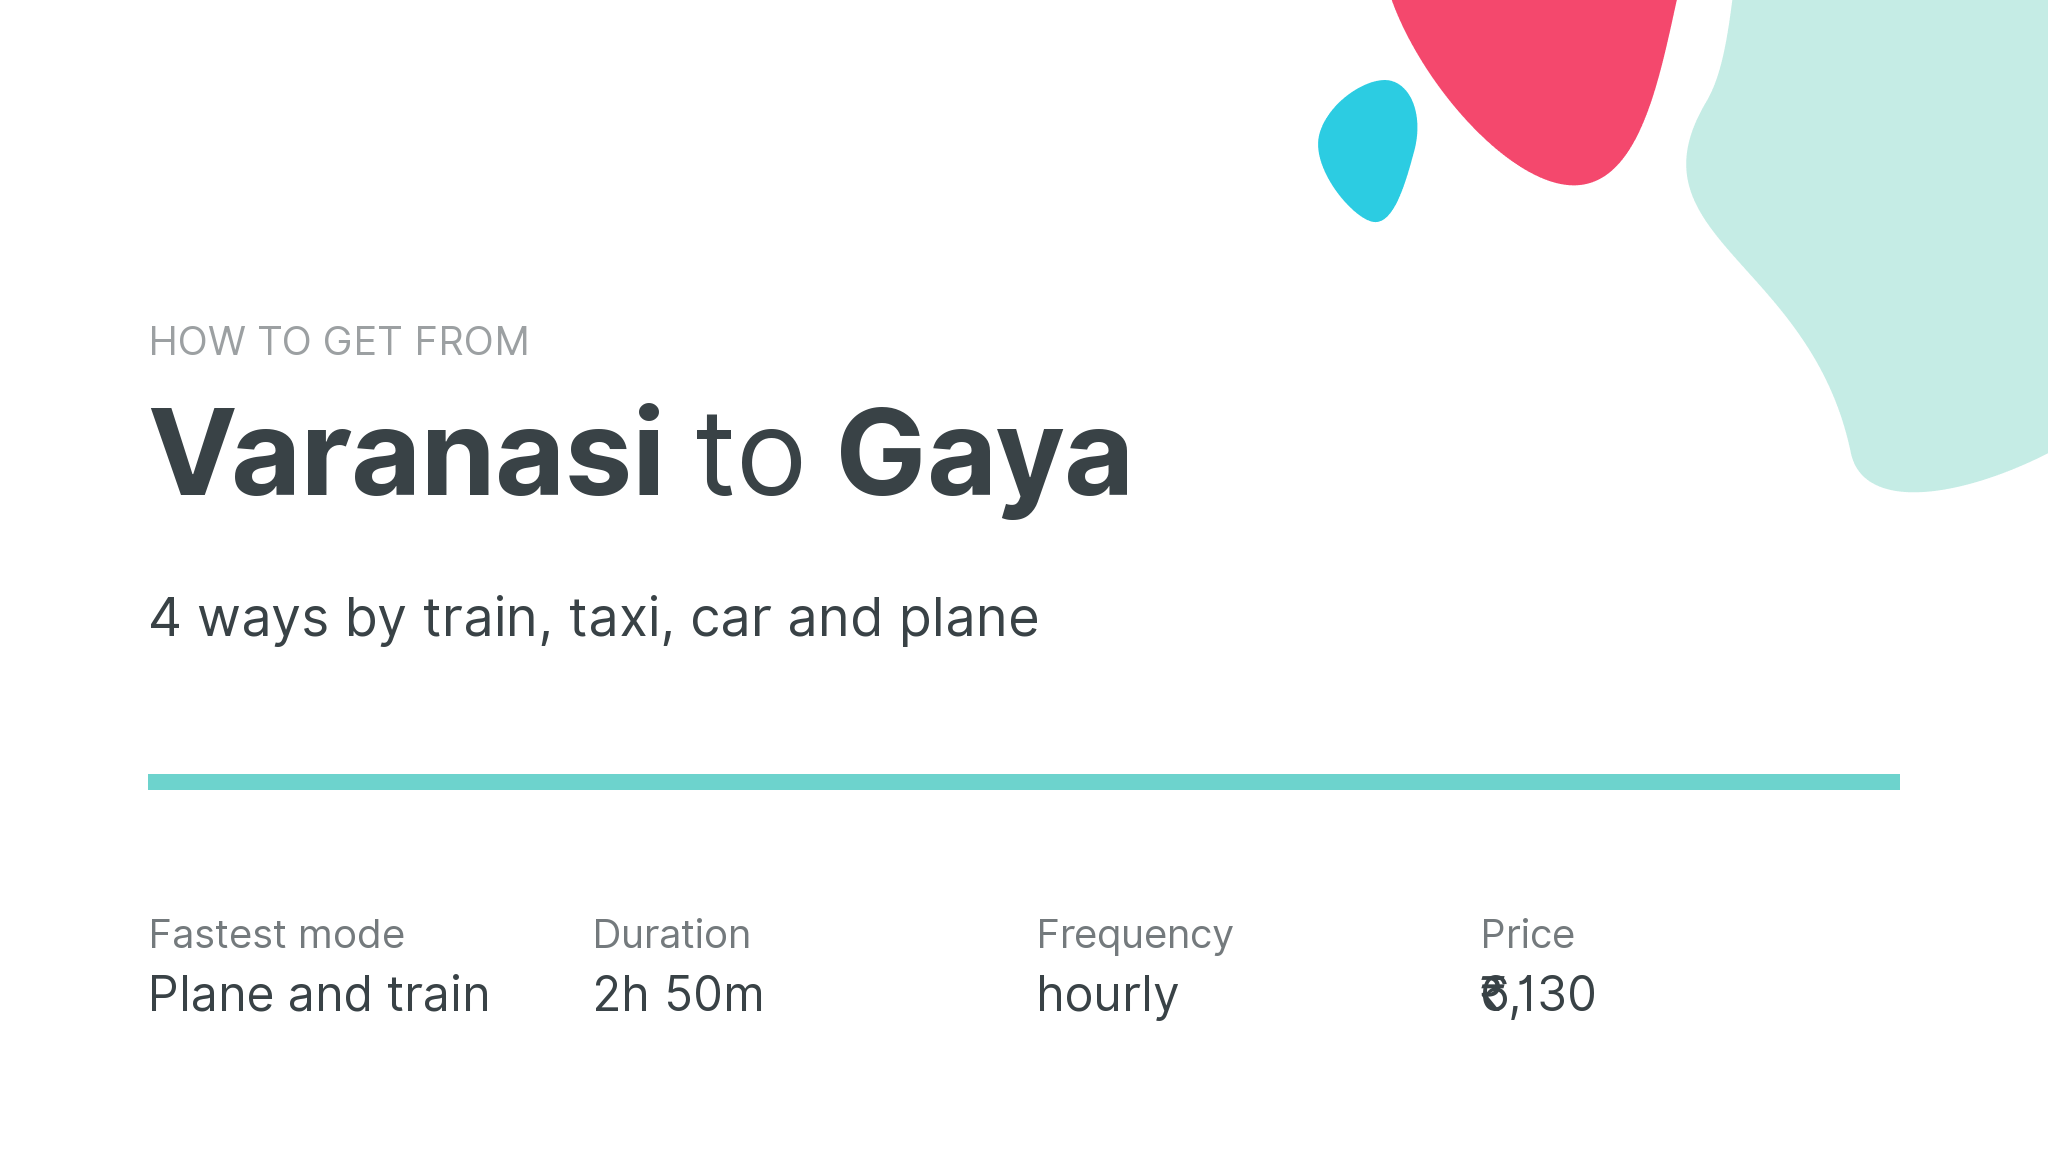 How do I get from Varanasi to Gaya